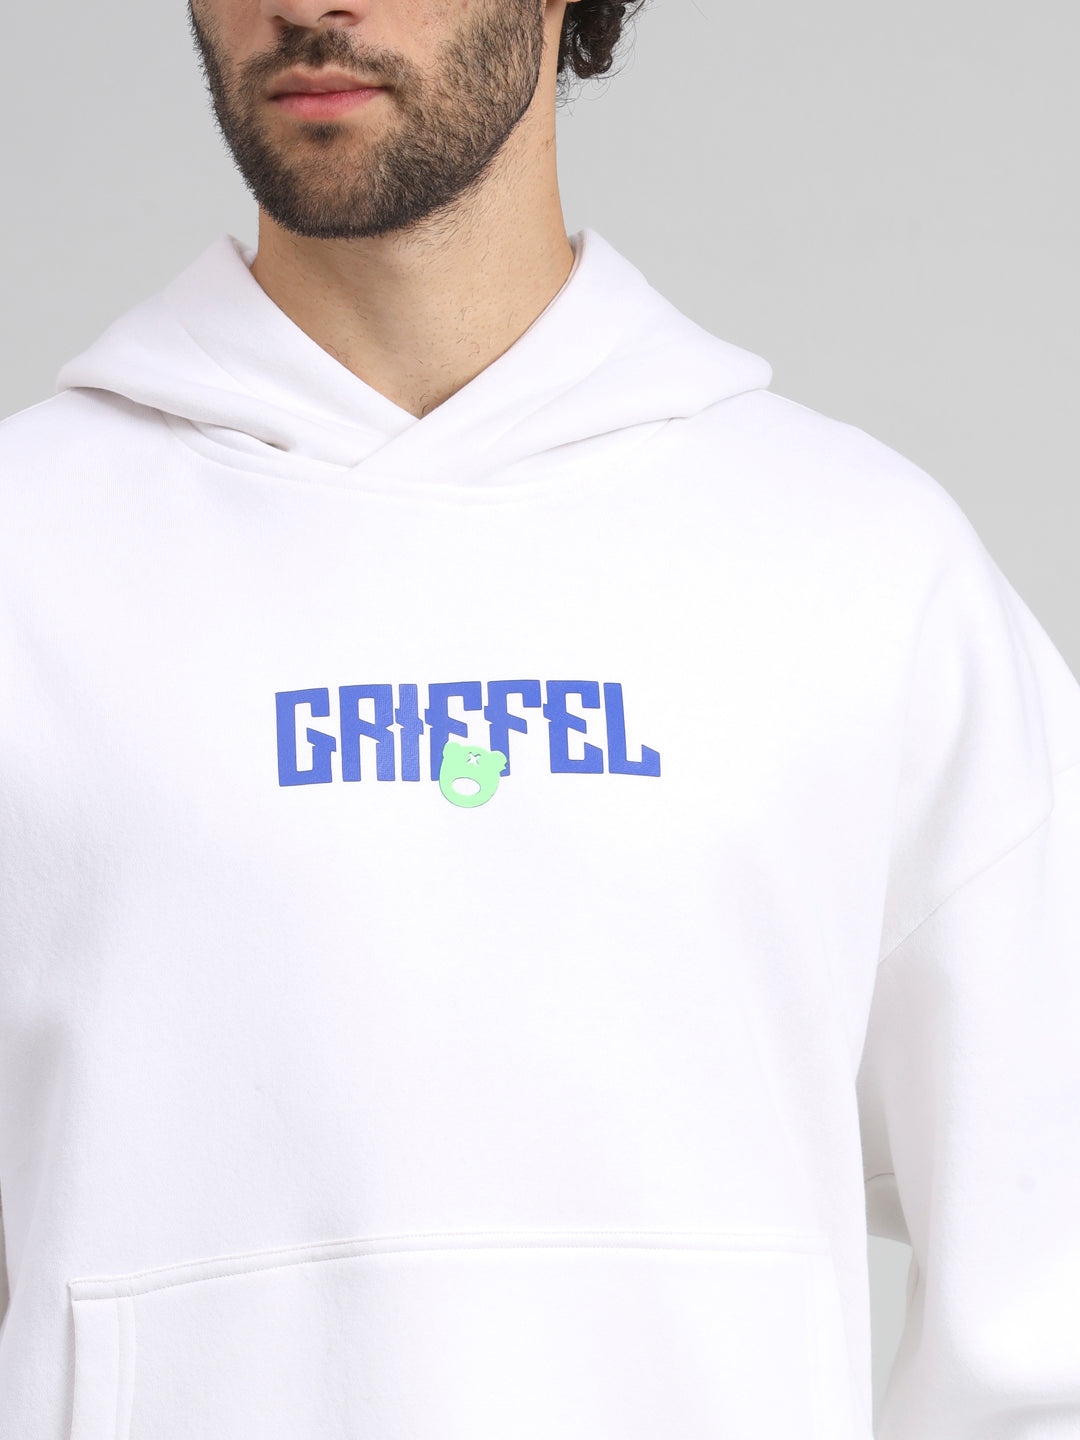 Griffel Men's Black New Era Print Front Logo Oversized Fleece Hoodie Sweatshirt